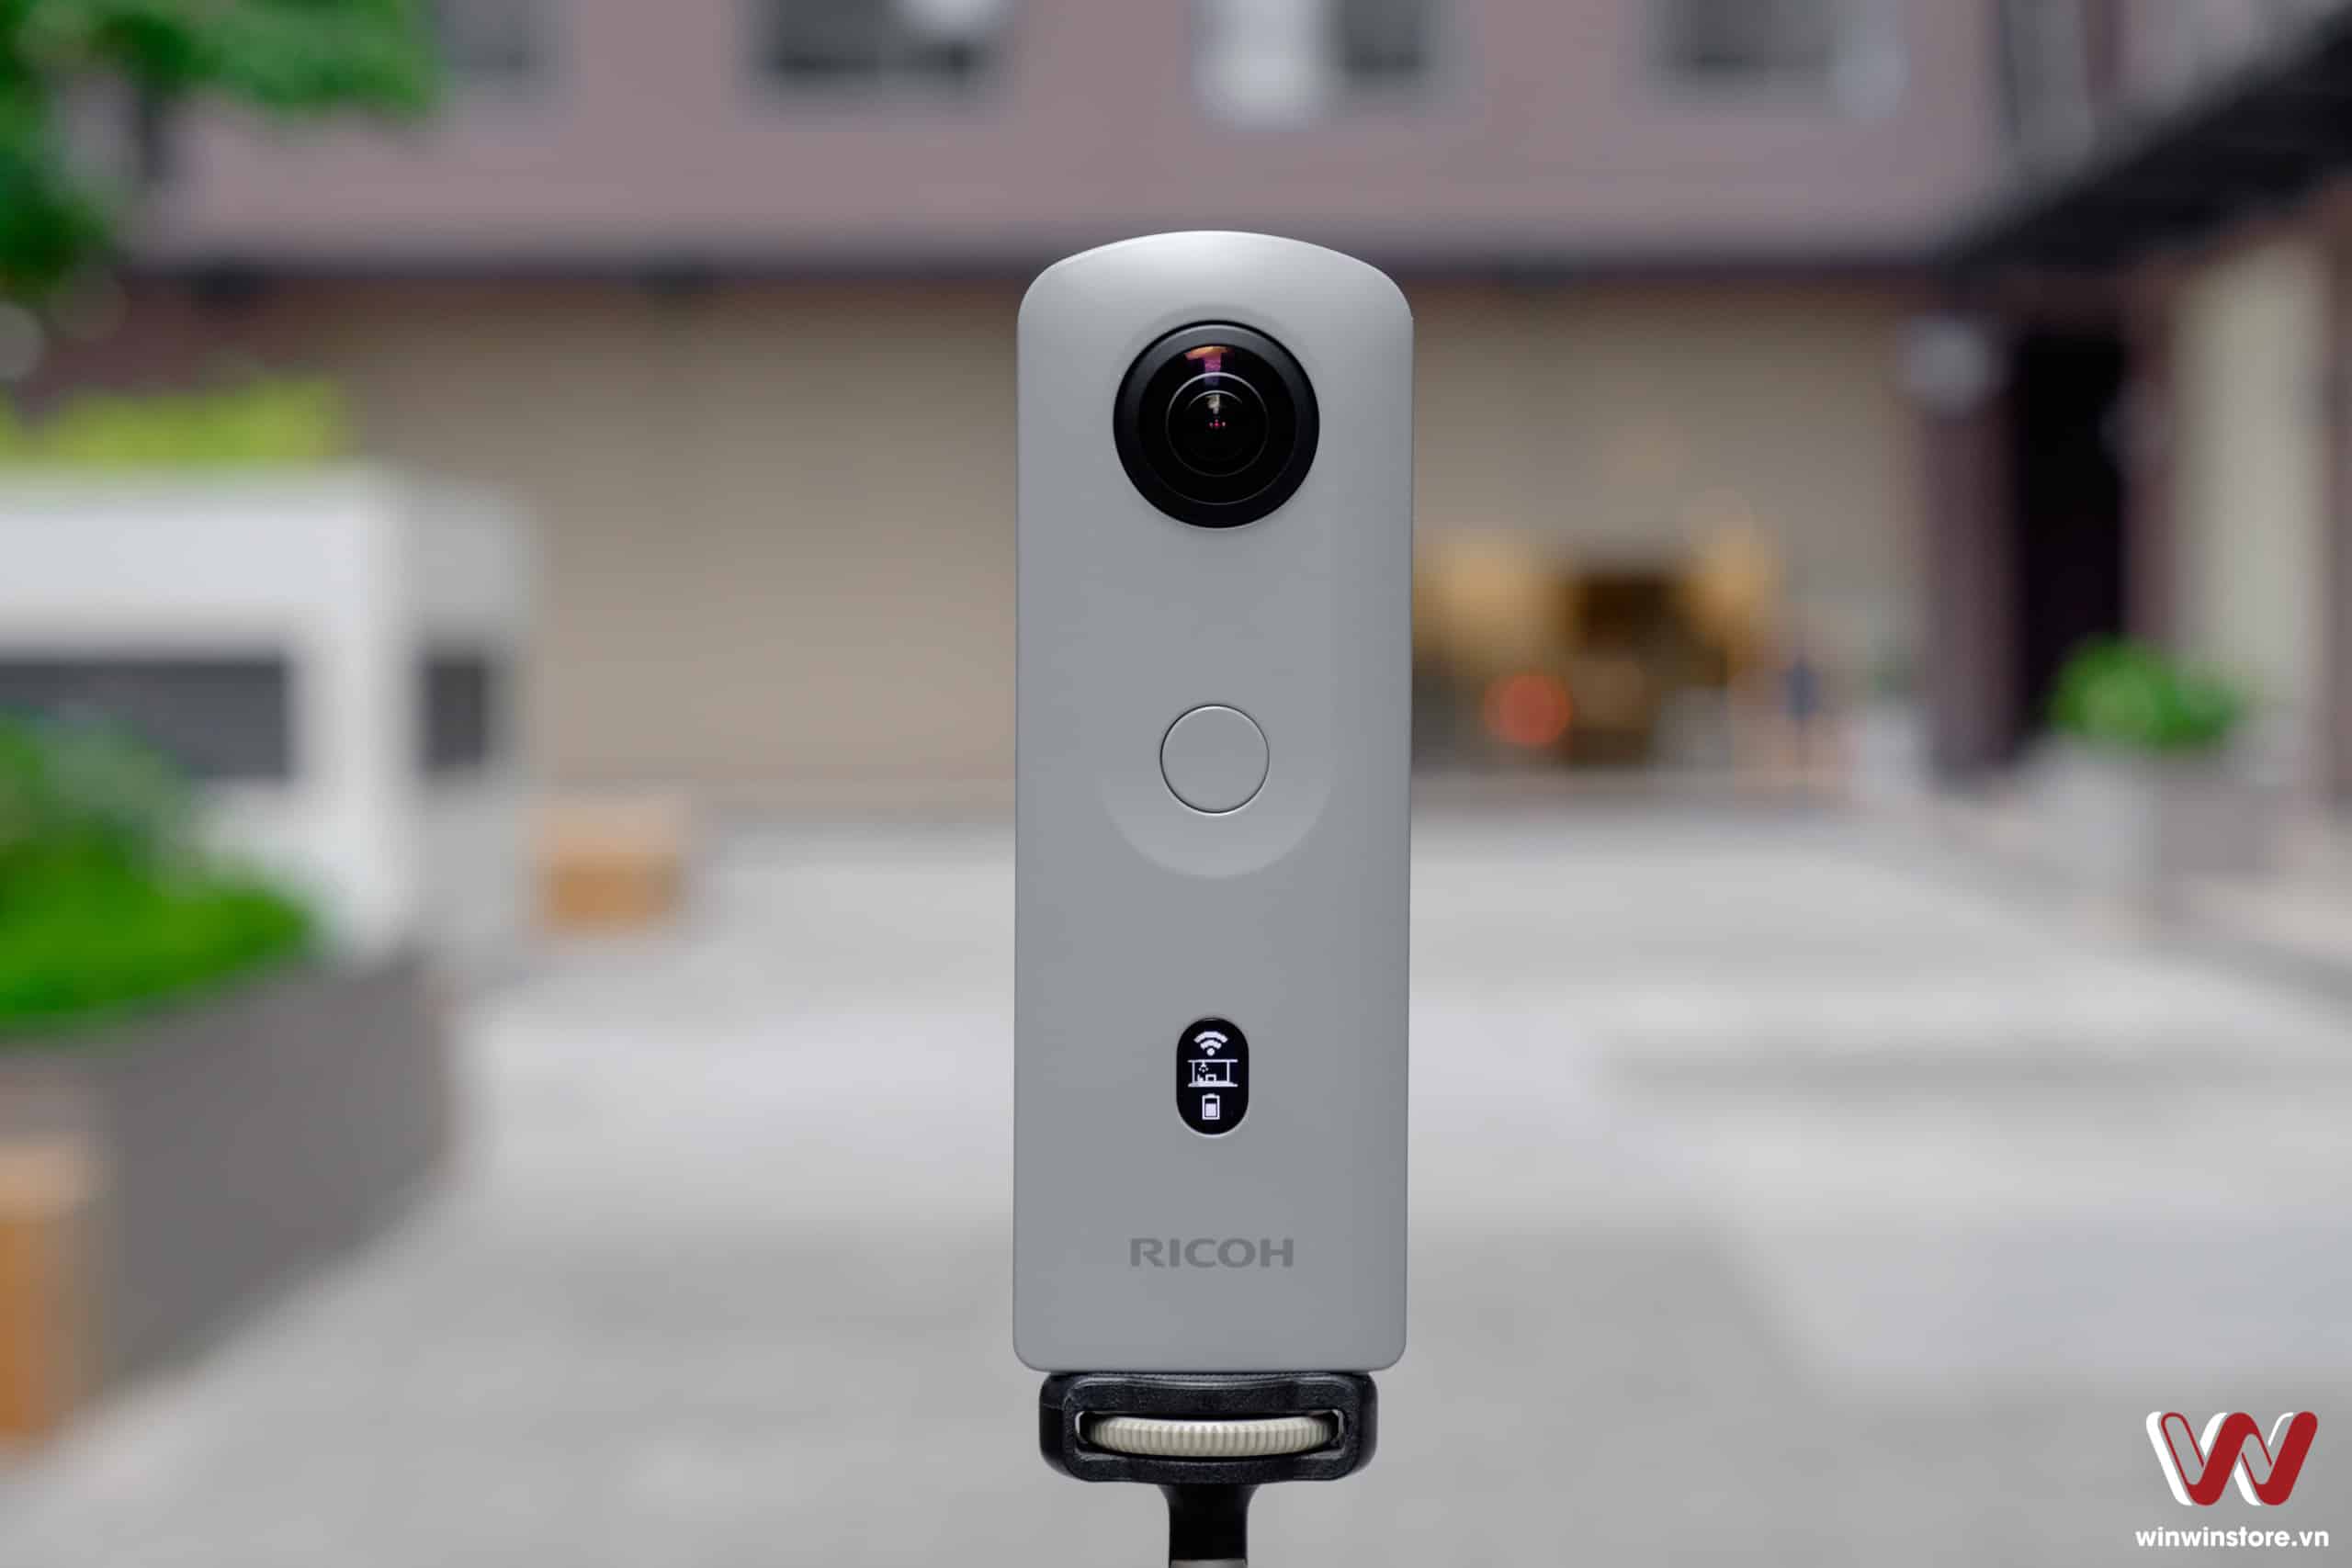 Trên tay camera 360 độ Ricoh Theta SC2 Business Edition: Giải pháp chụp ảnh 360 giá rẻ dành cho nội thất, bất động sản